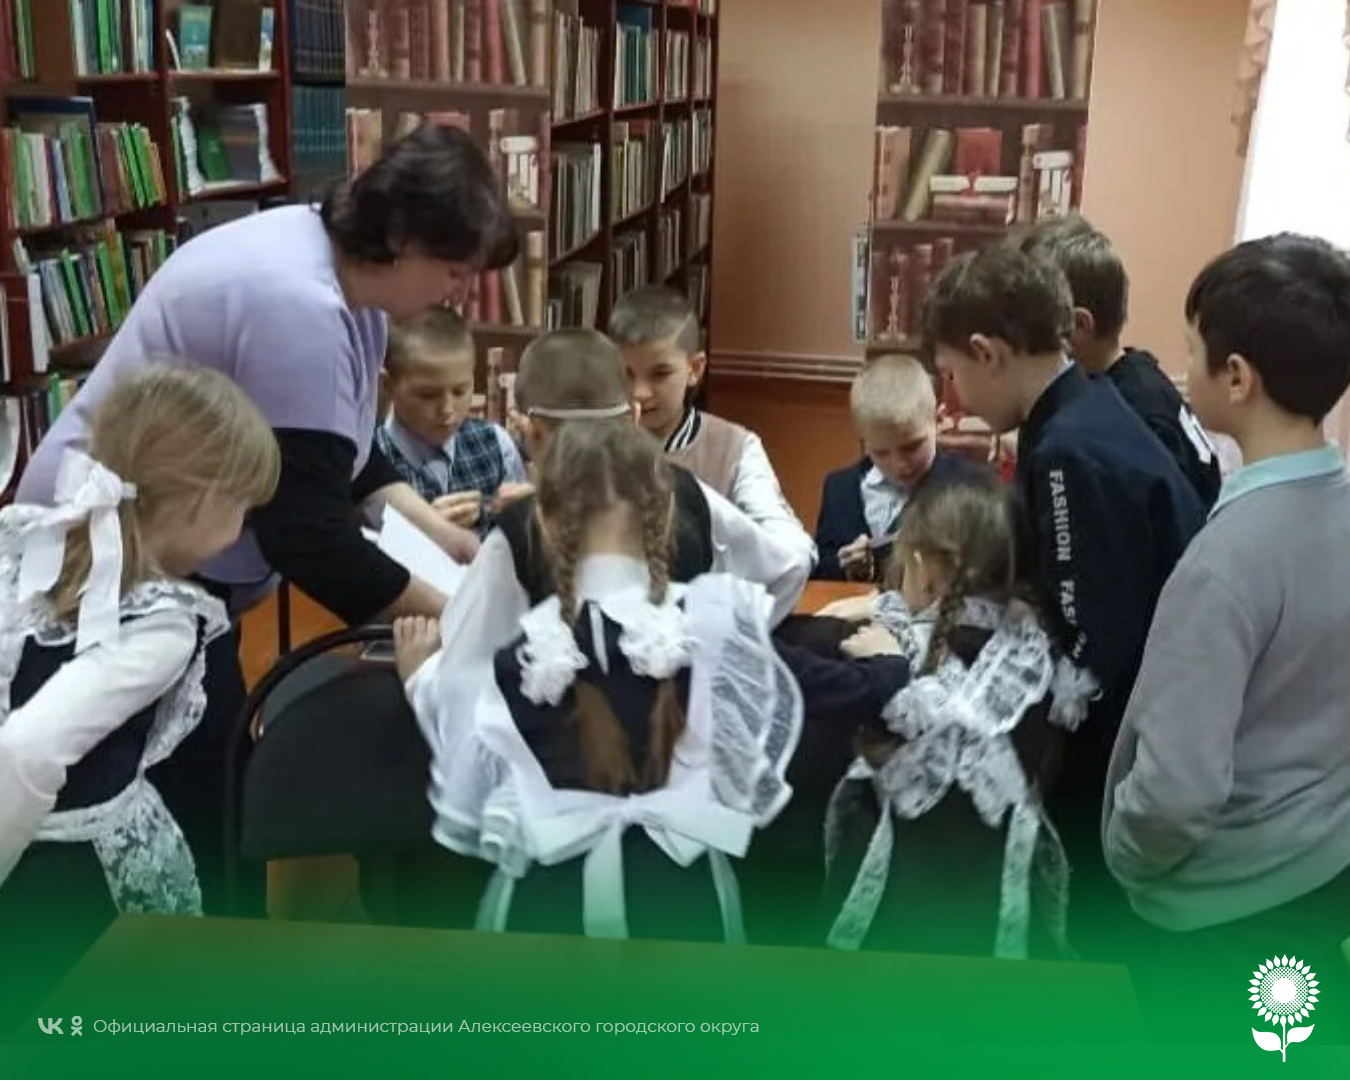 В рамках недели безопасного Рунета в Белозоровской модельной библиотеке состоялась квест–игра «КиберОдиссея».